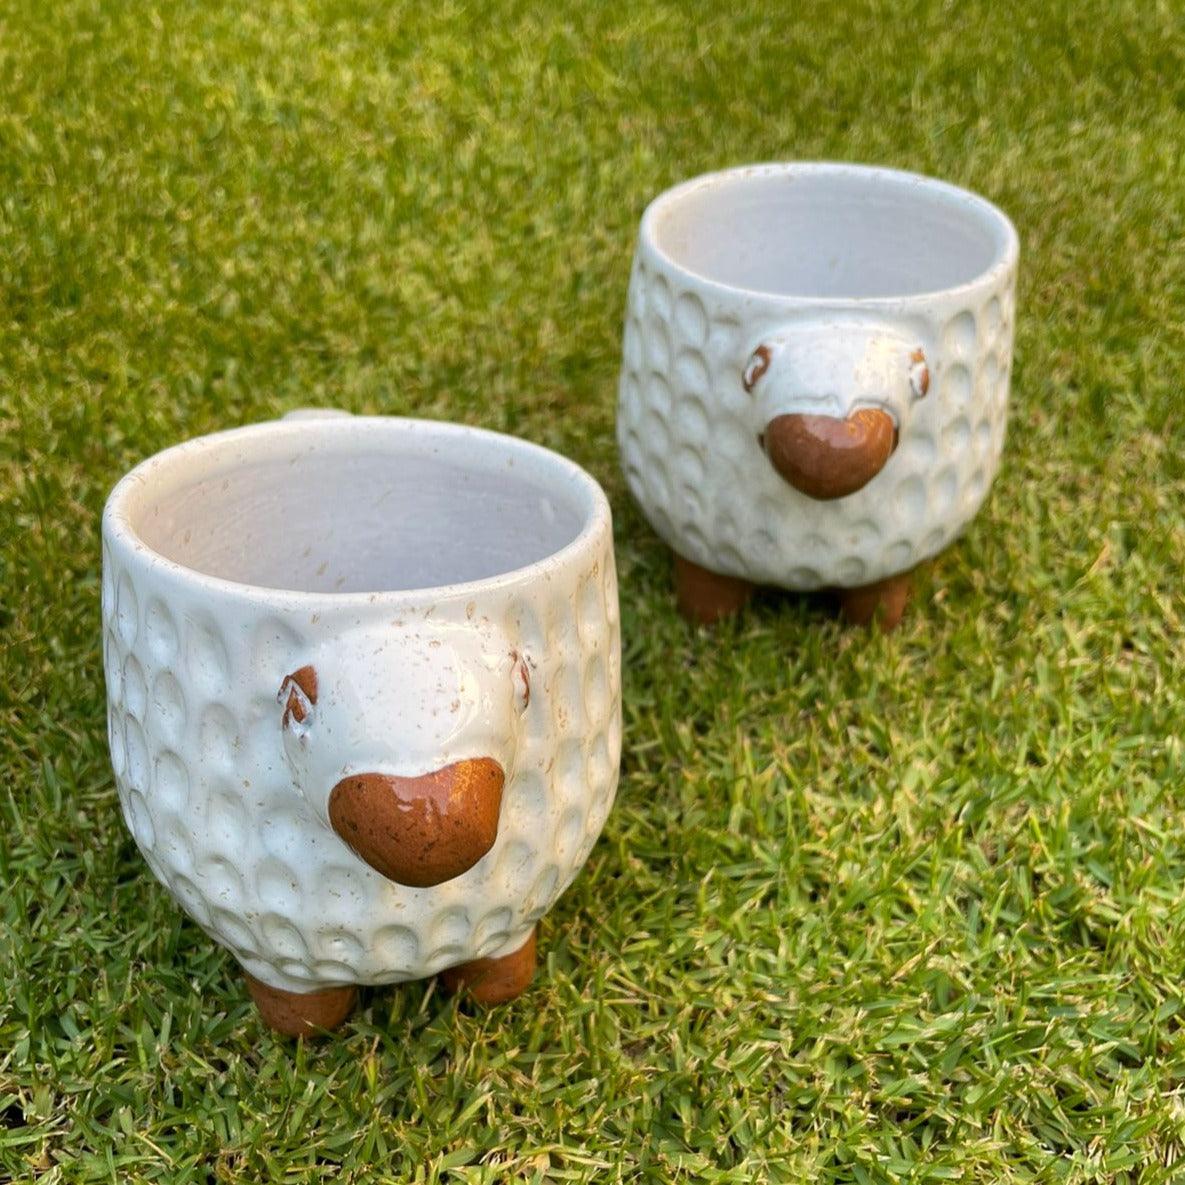 Fluffy Handmade Pottery Mug - chefmay.com